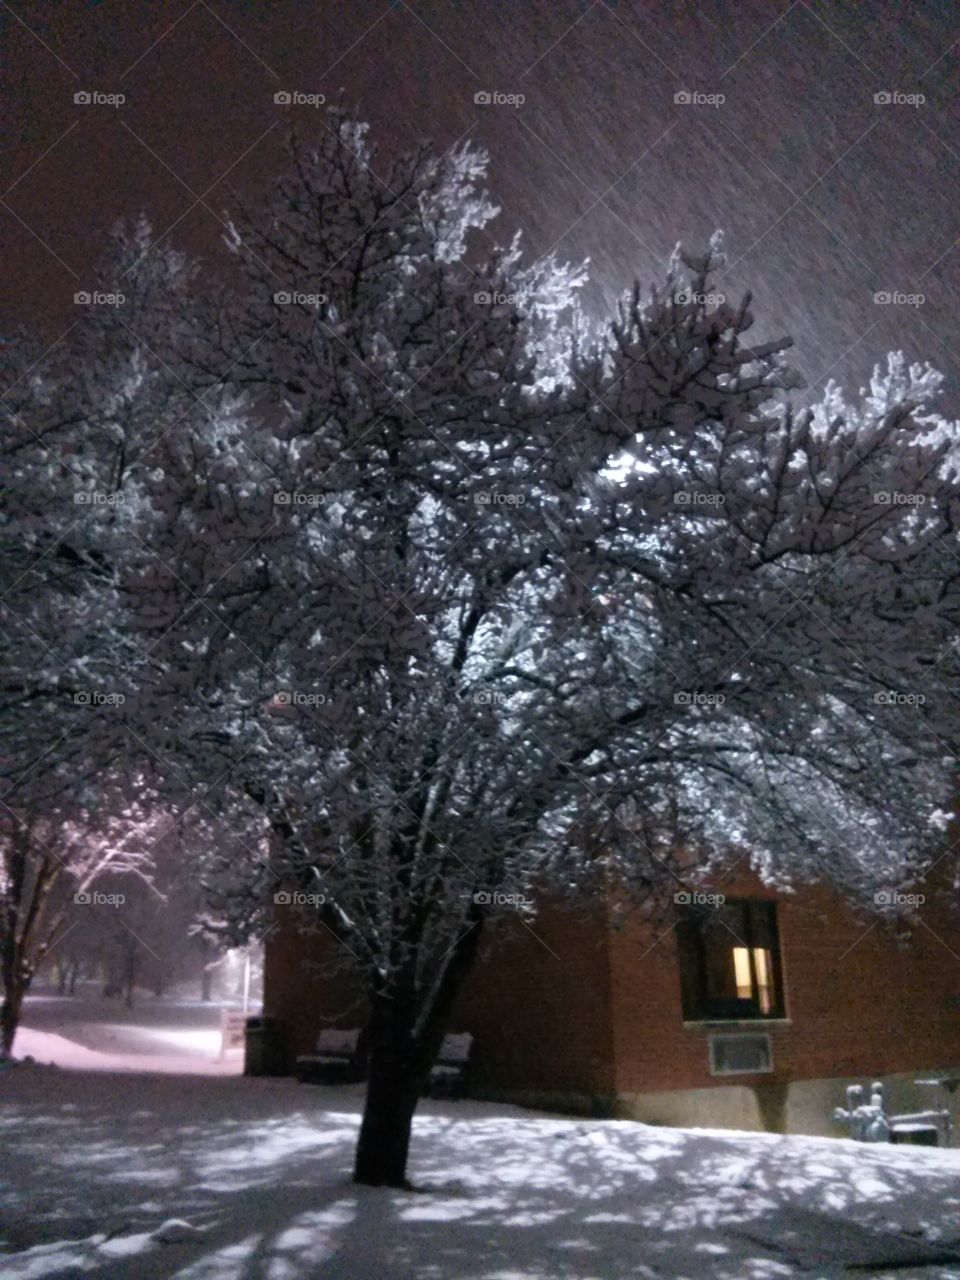 Snow. Tree with snow at night